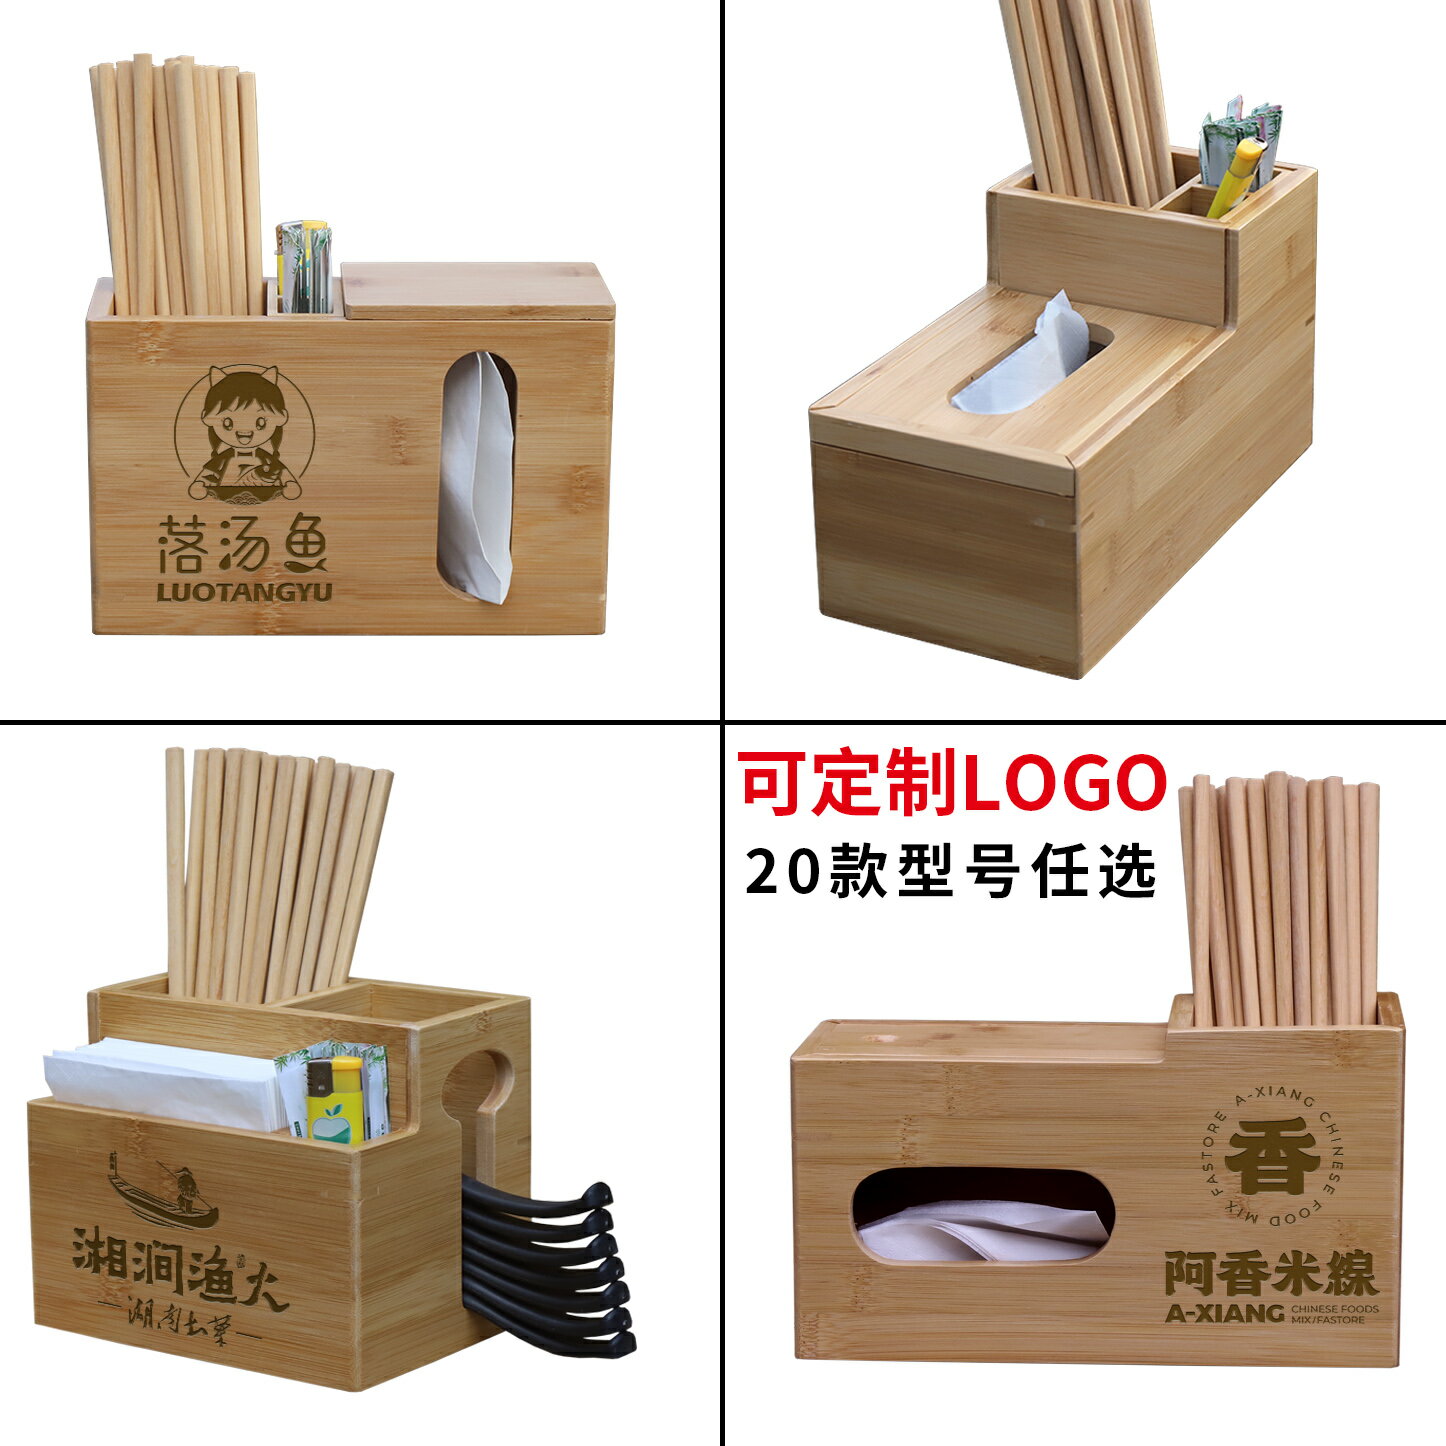 商用筷子筒 竹籤桶 餐廳飯店創意多功能竹筒筷子筒定製商用餐具收納桶竹製瀝水筷子盒『XY39718』